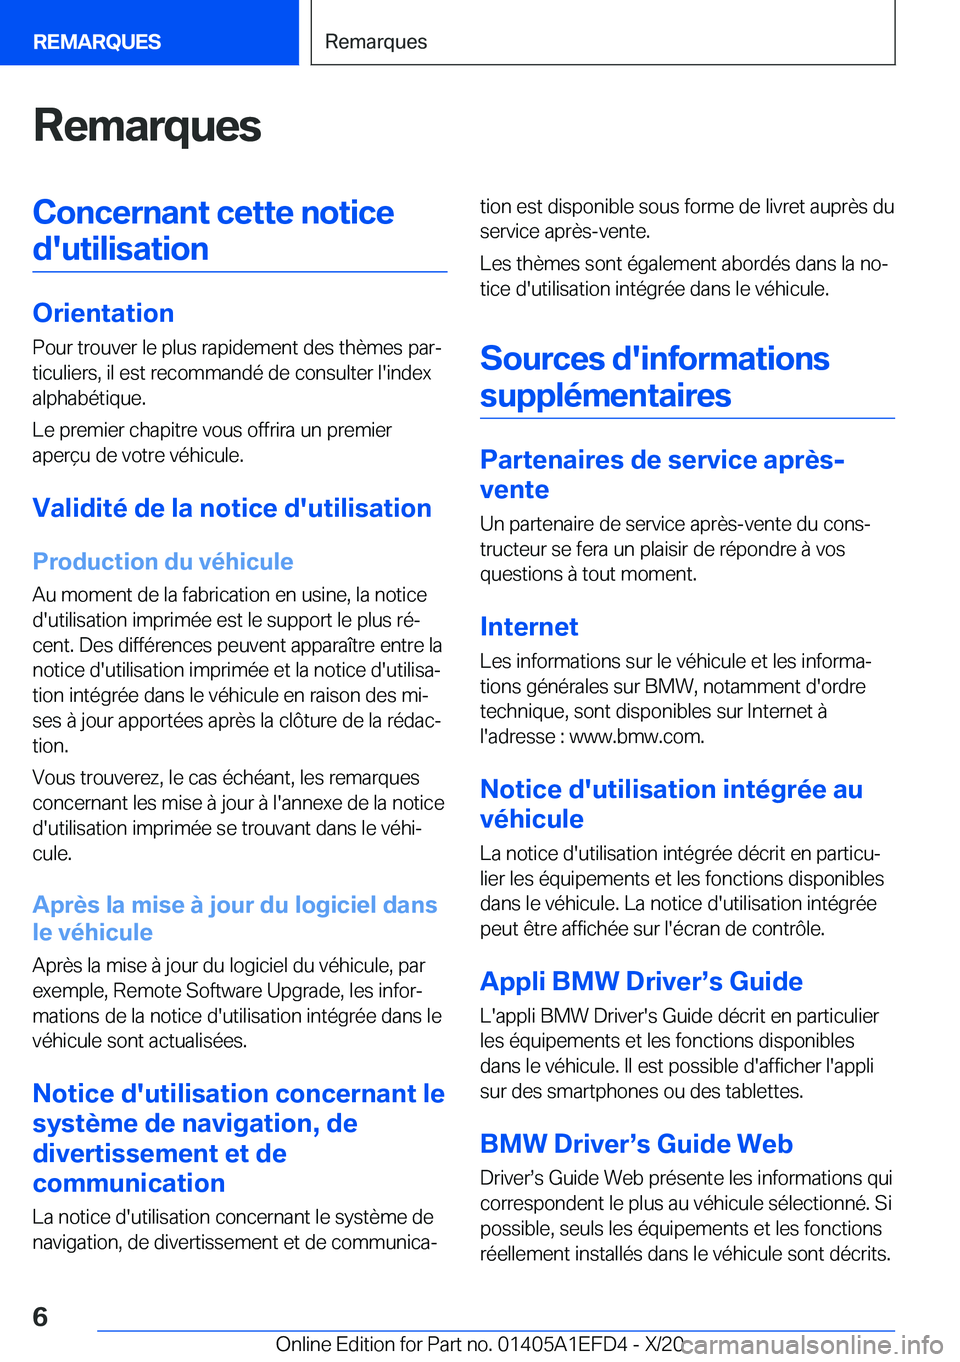 BMW X7 2021  Notices Demploi (in French) �R�e�m�a�r�q�u�e�s�C�o�n�c�e�r�n�a�n�t��c�e�t�t�e��n�o�t�i�c�e�d�'�u�t�i�l�i�s�a�t�i�o�n
�O�r�i�e�n�t�a�t�i�o�n �P�o�u�r��t�r�o�u�v�e�r��l�e��p�l�u�s��r�a�p�i�d�e�m�e�n�t��d�e�s��t�h�è�m�